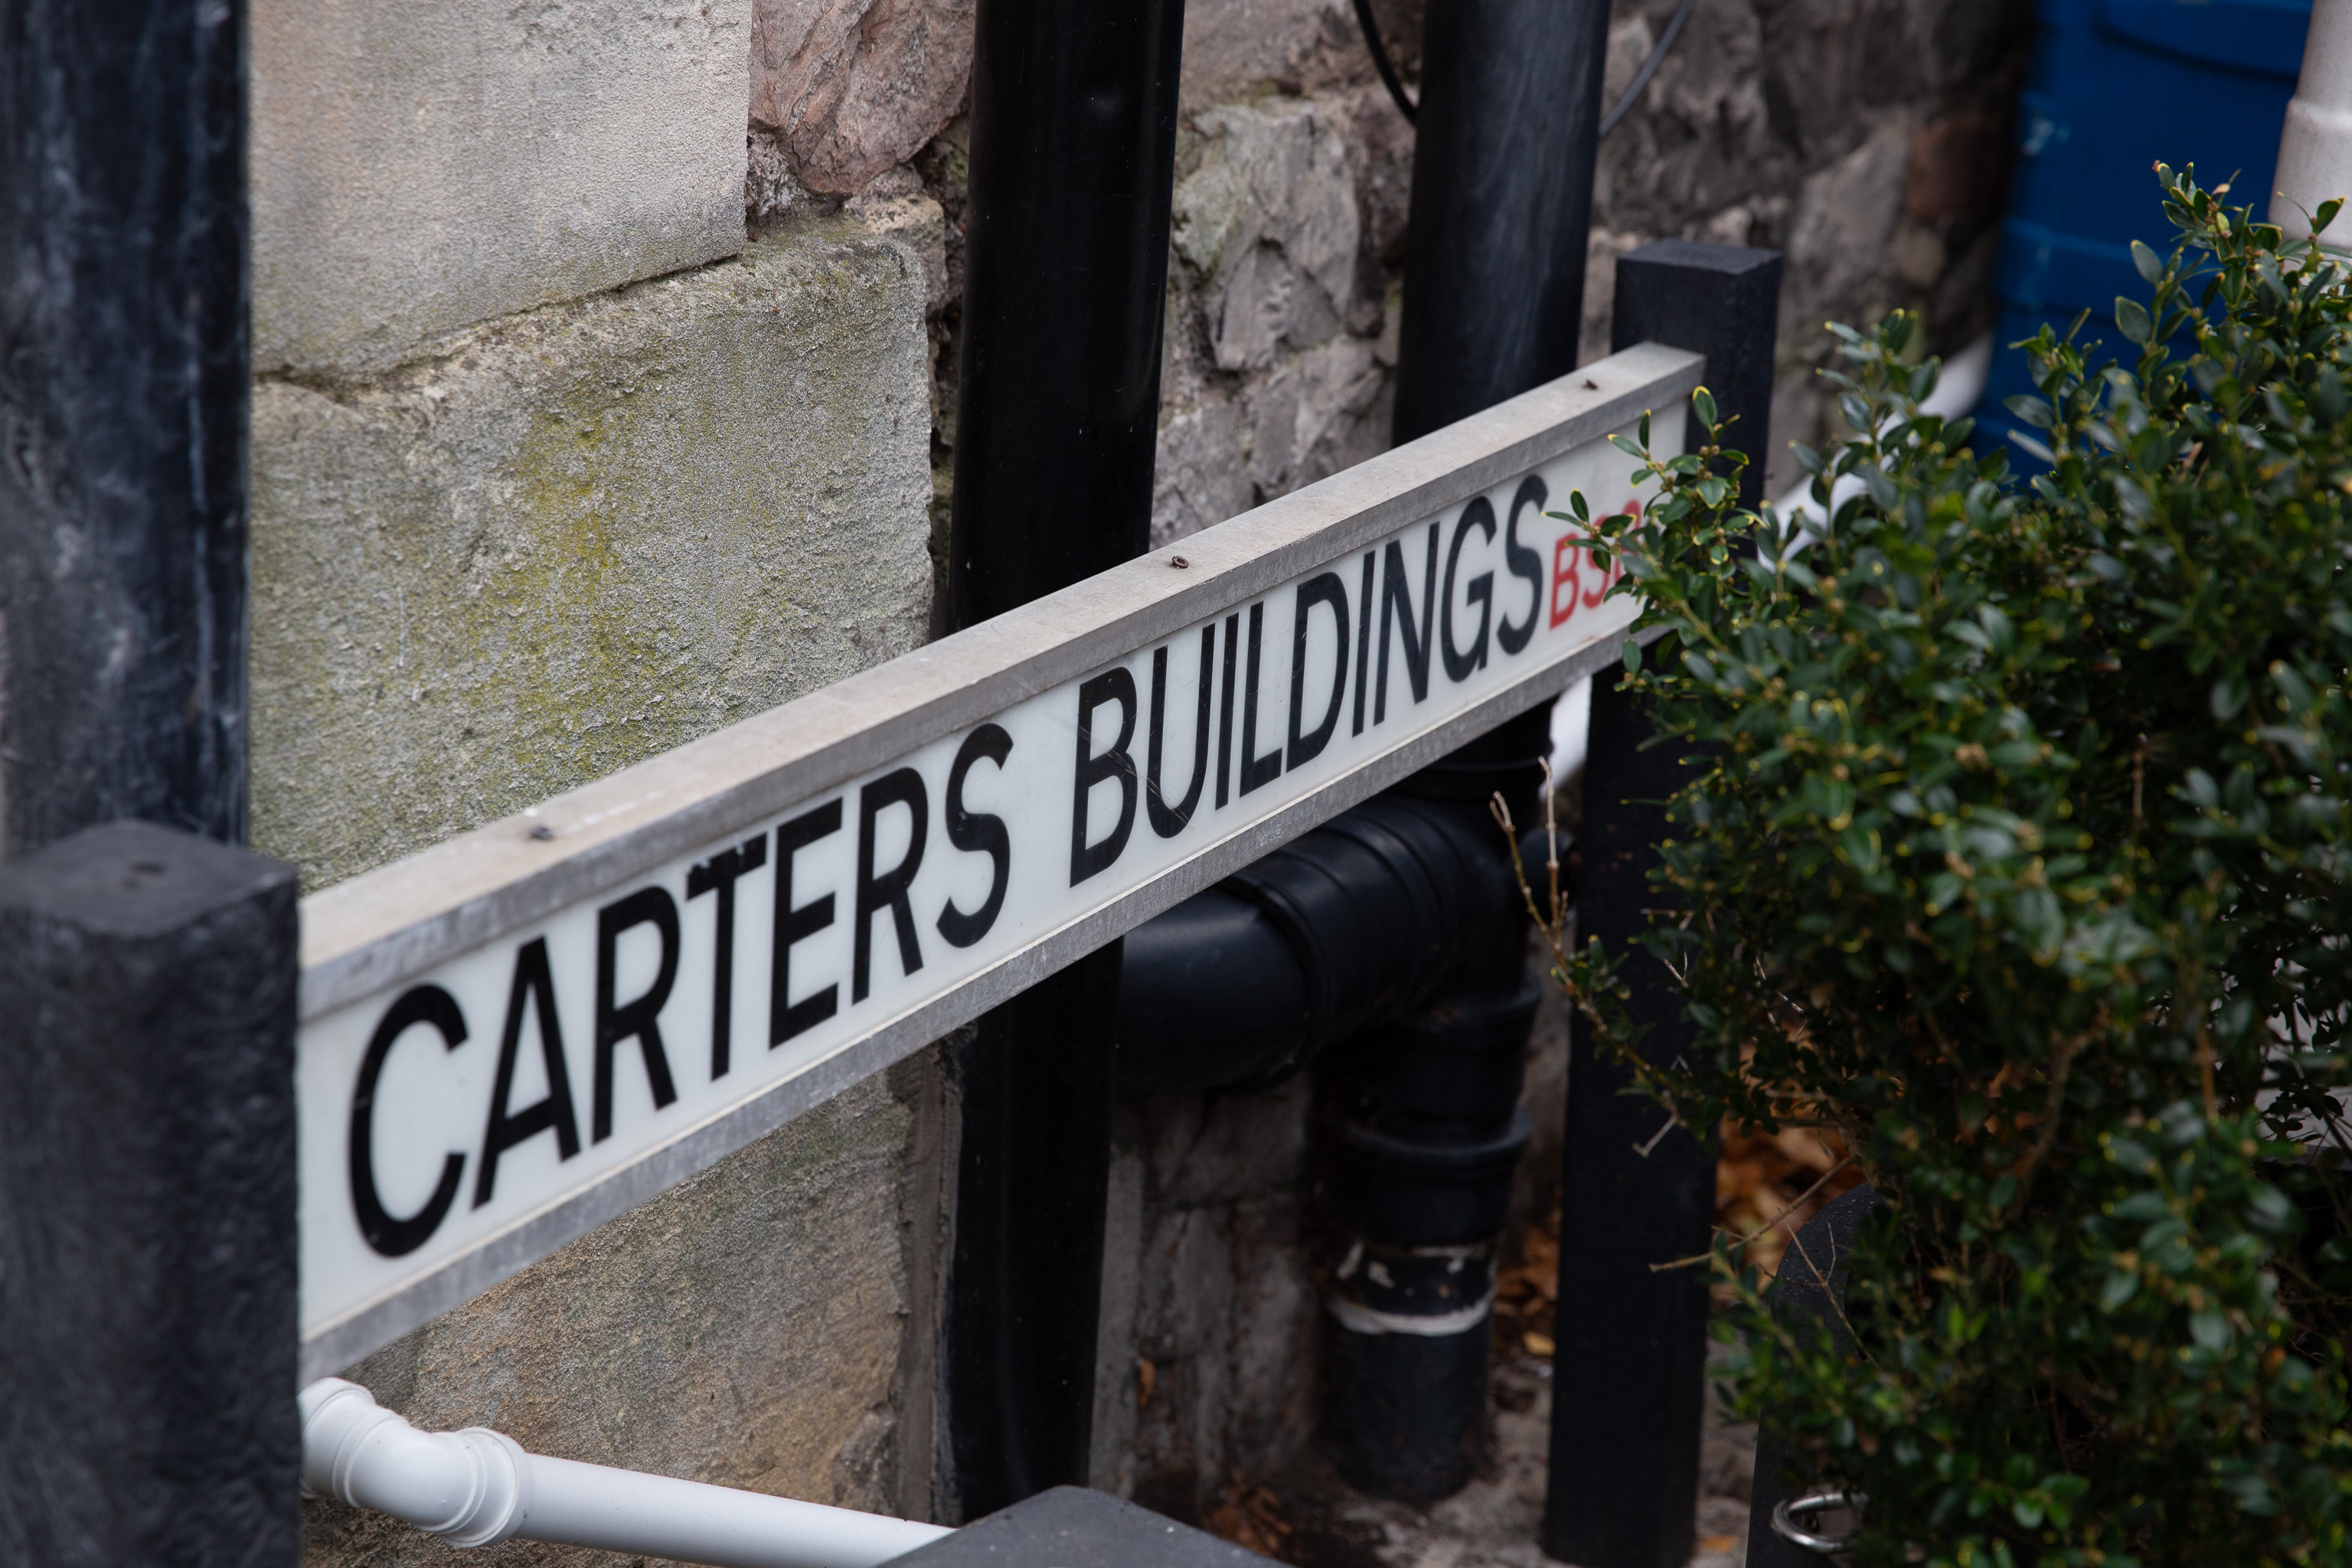 Carters Buildings
